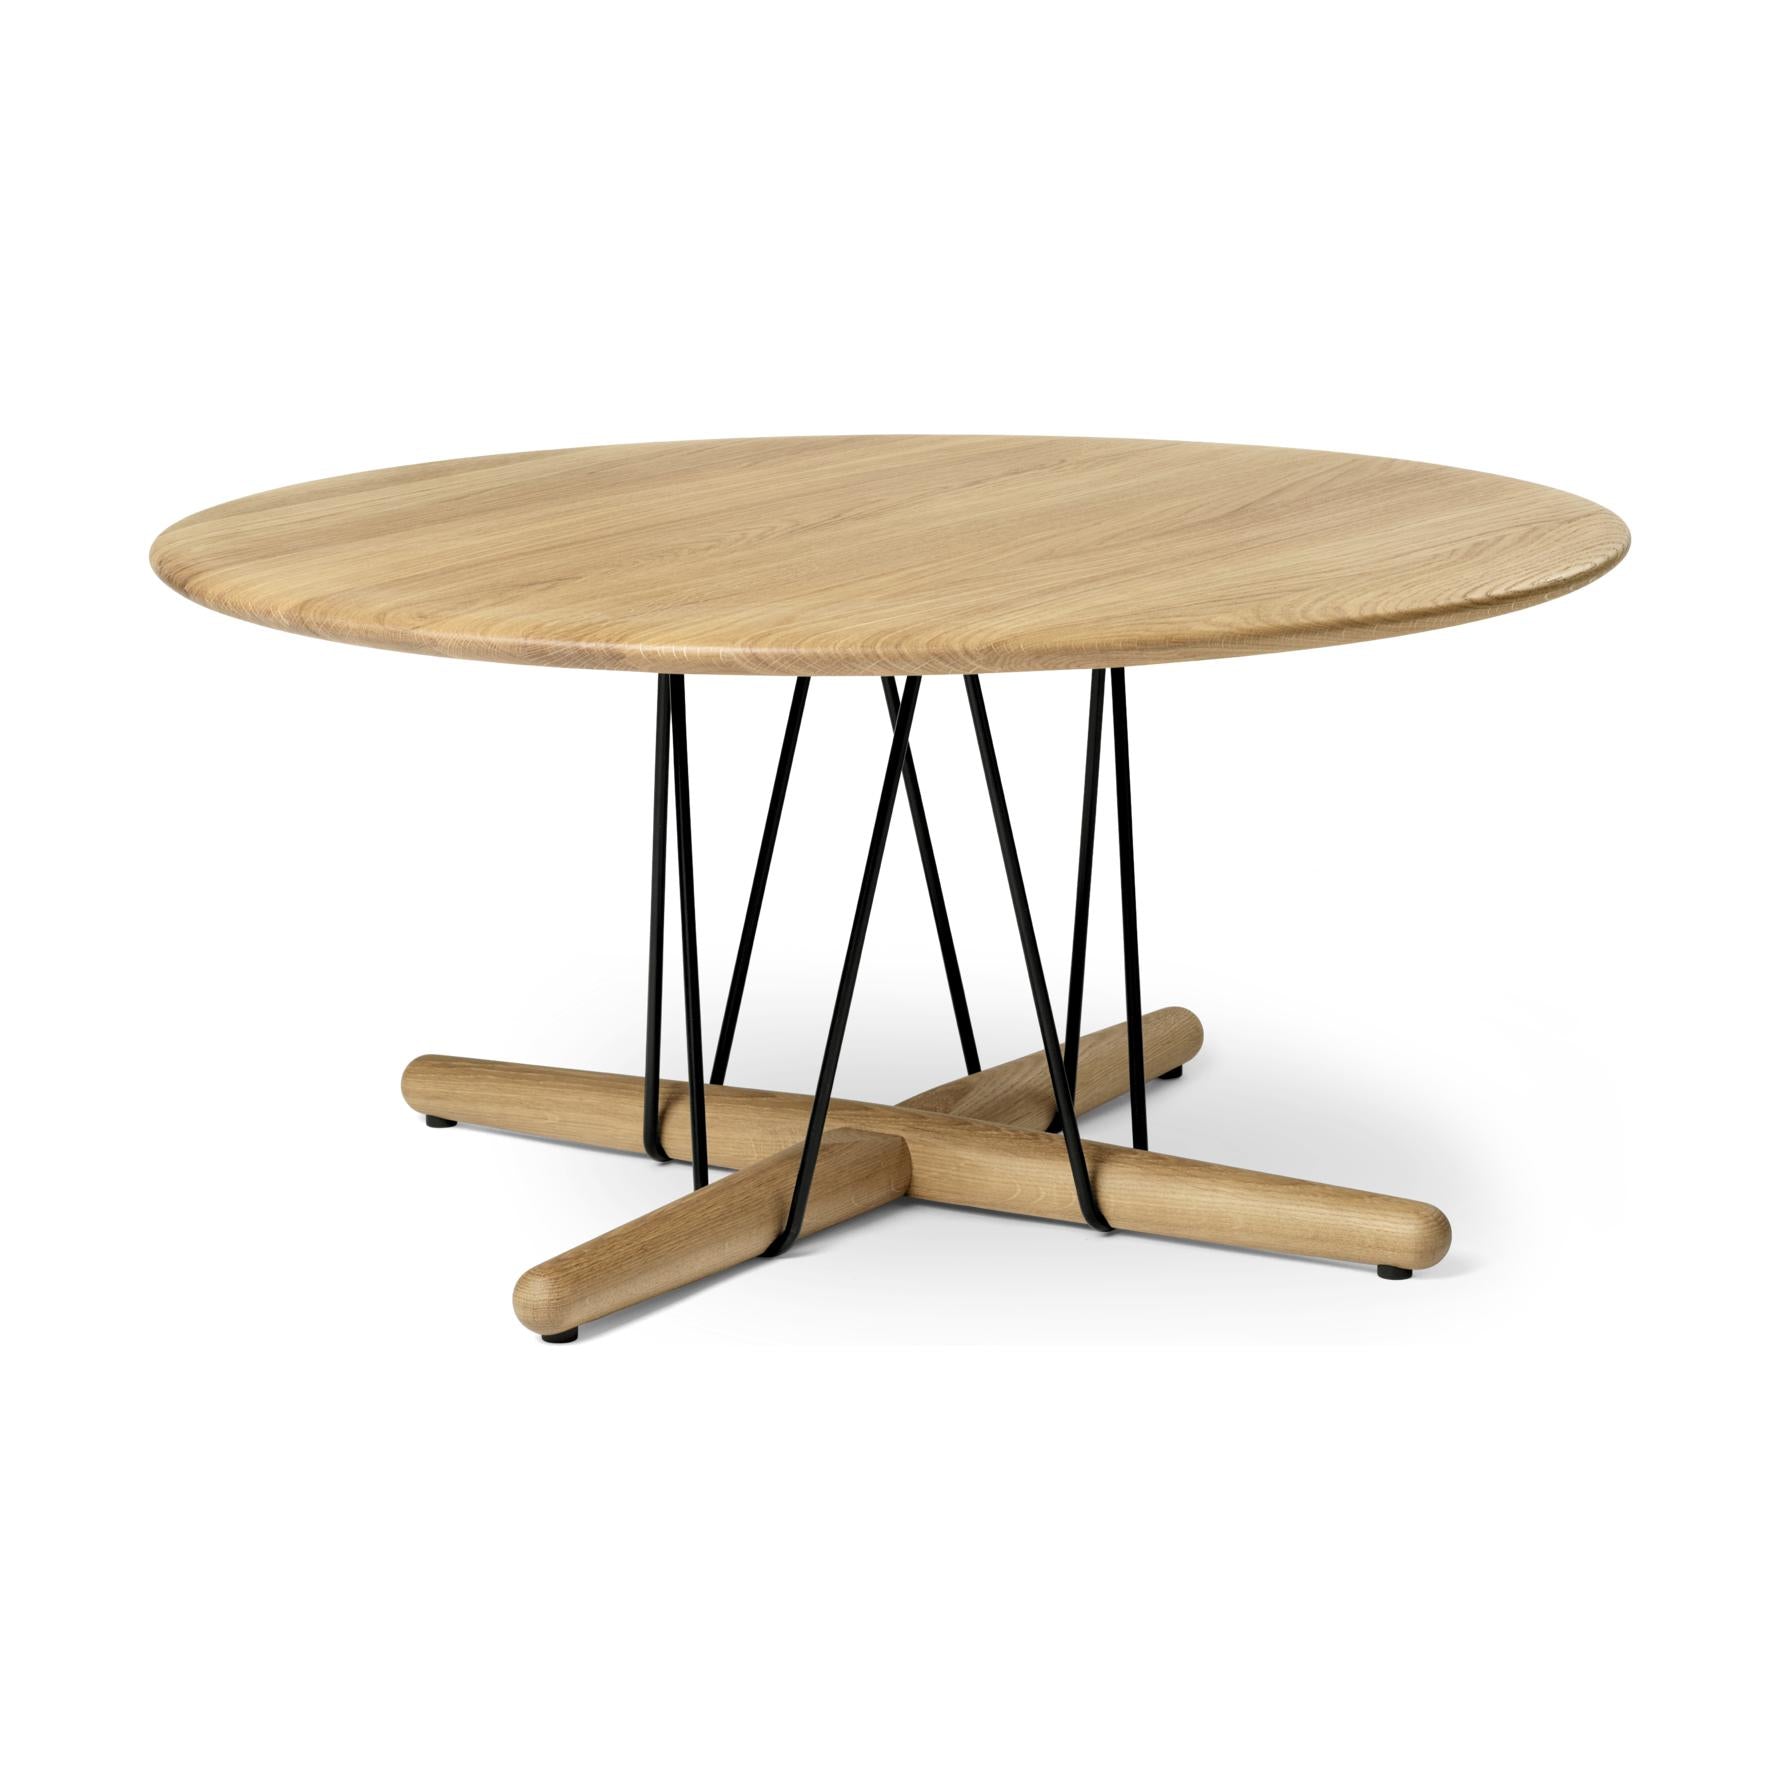 Carl Hansen E021 Embrace Table, quercia oliata, Ø 80 cm